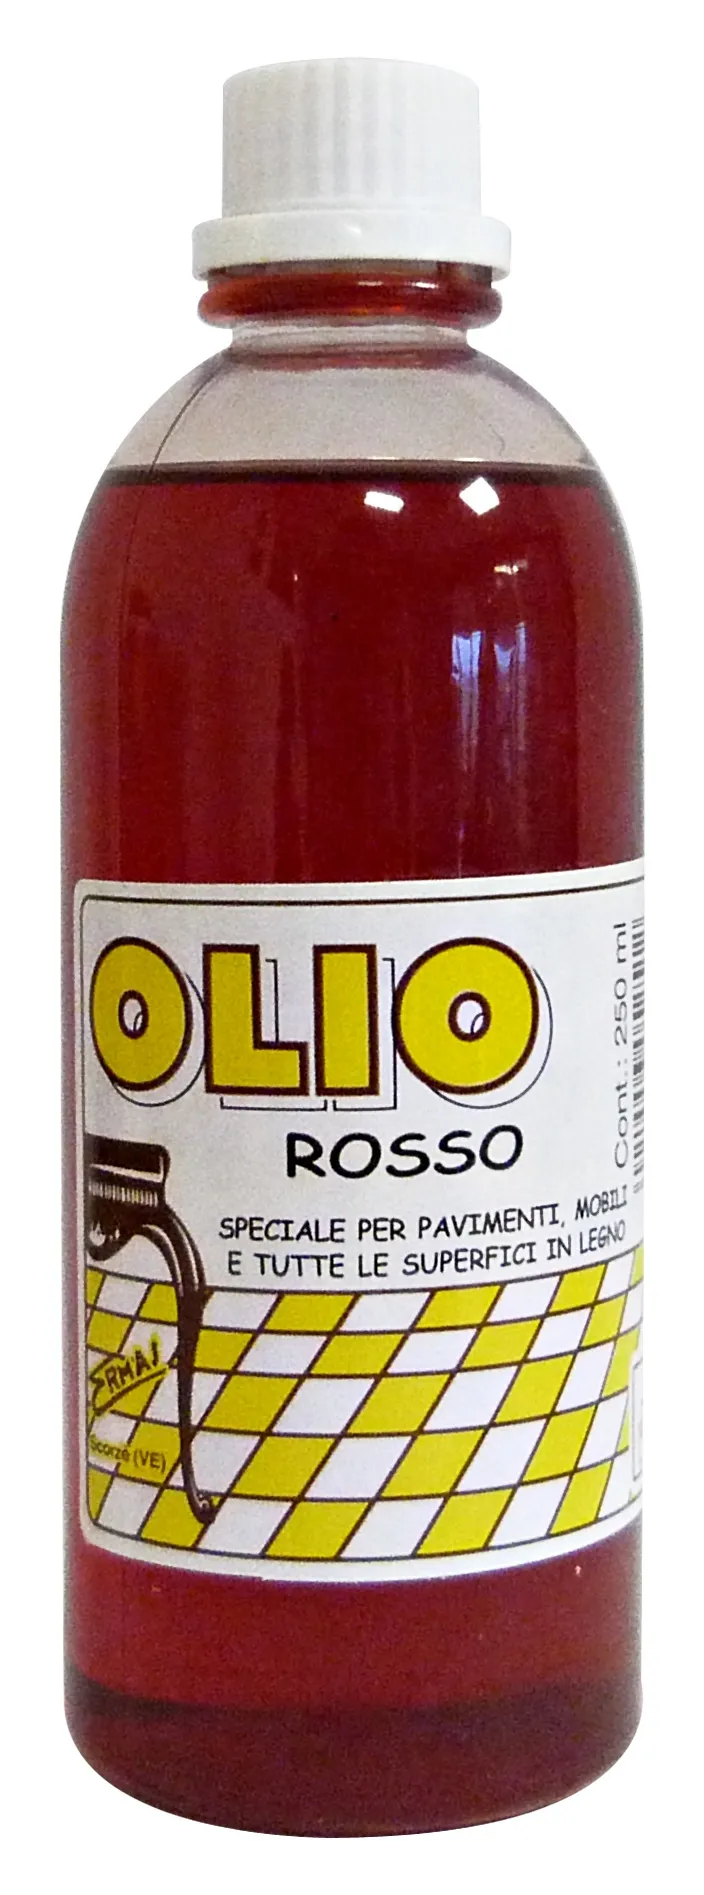 "OLIO Rosso 250 Ml. Detergenti Casa"